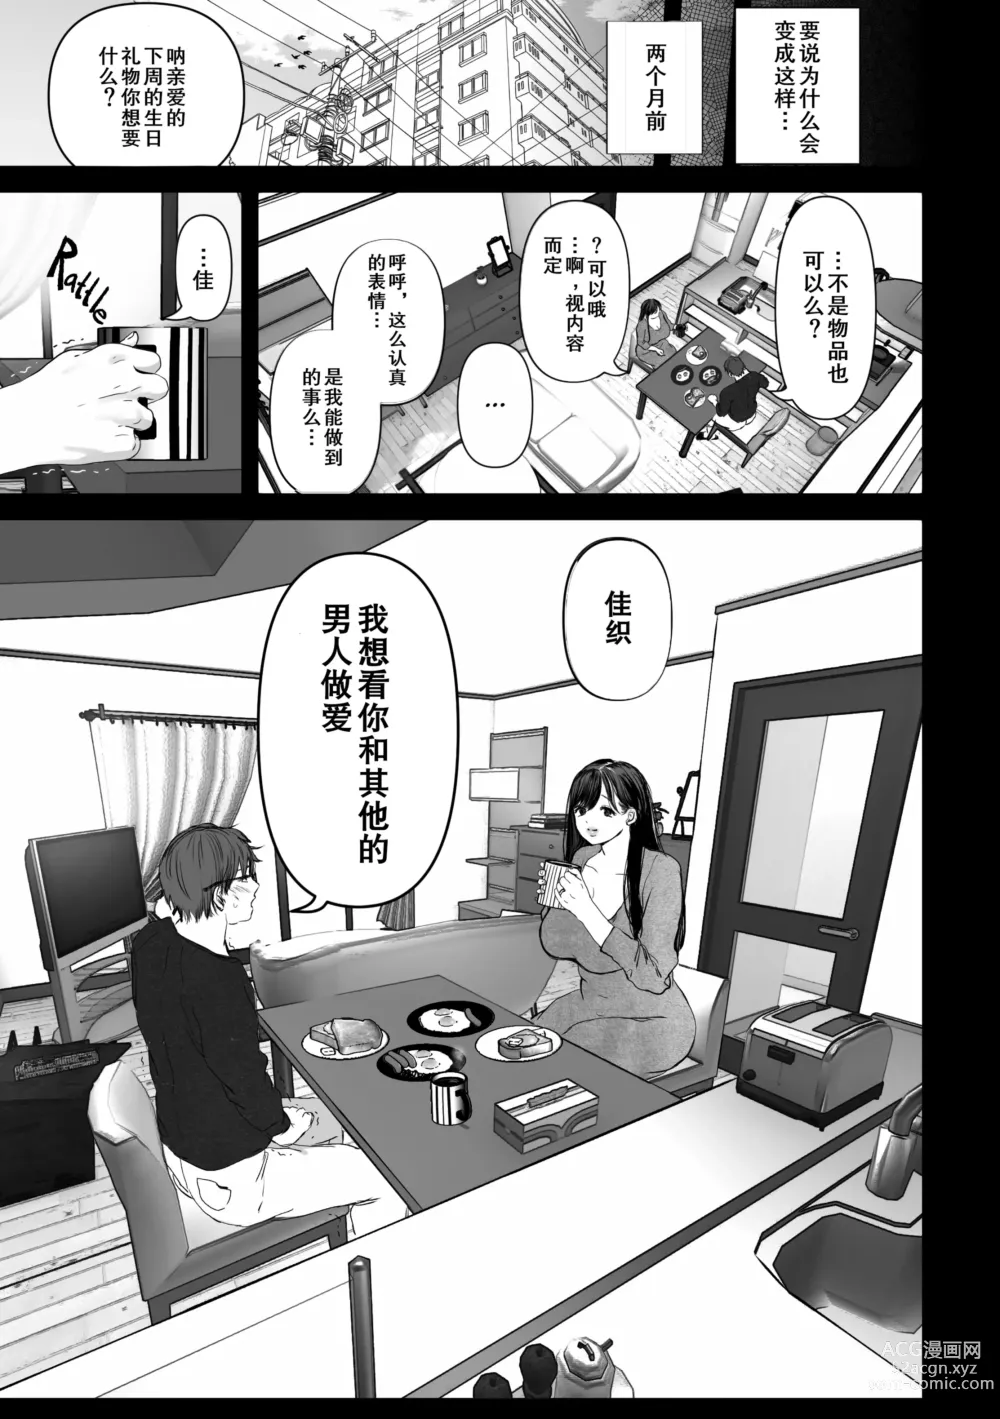 Page 4 of doujinshi Anata ga Nozomu nara 1-4